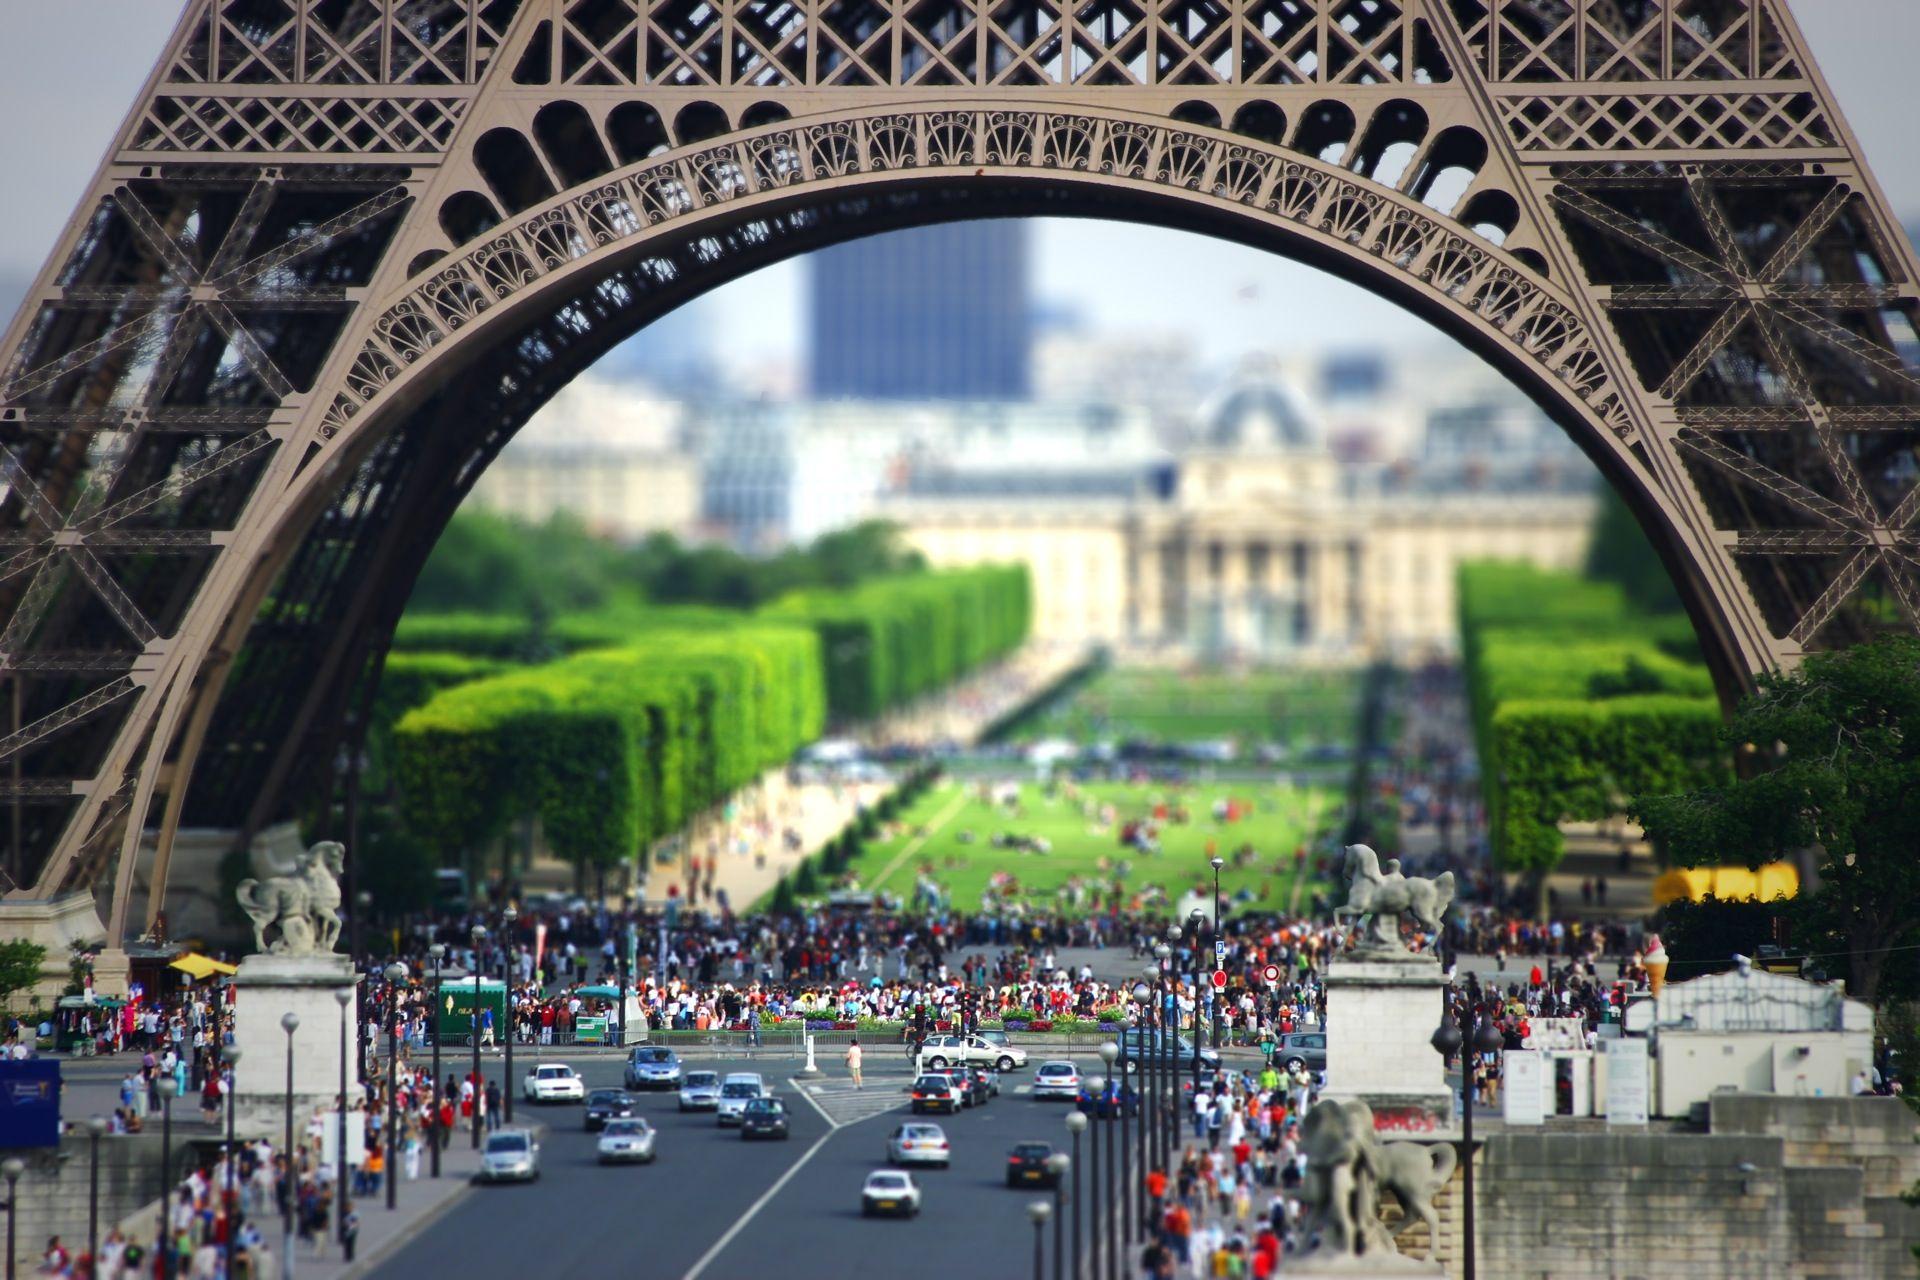 عکس برج ایفل غول پیکر و شهر مینیاتوری پاریس فرانسه 